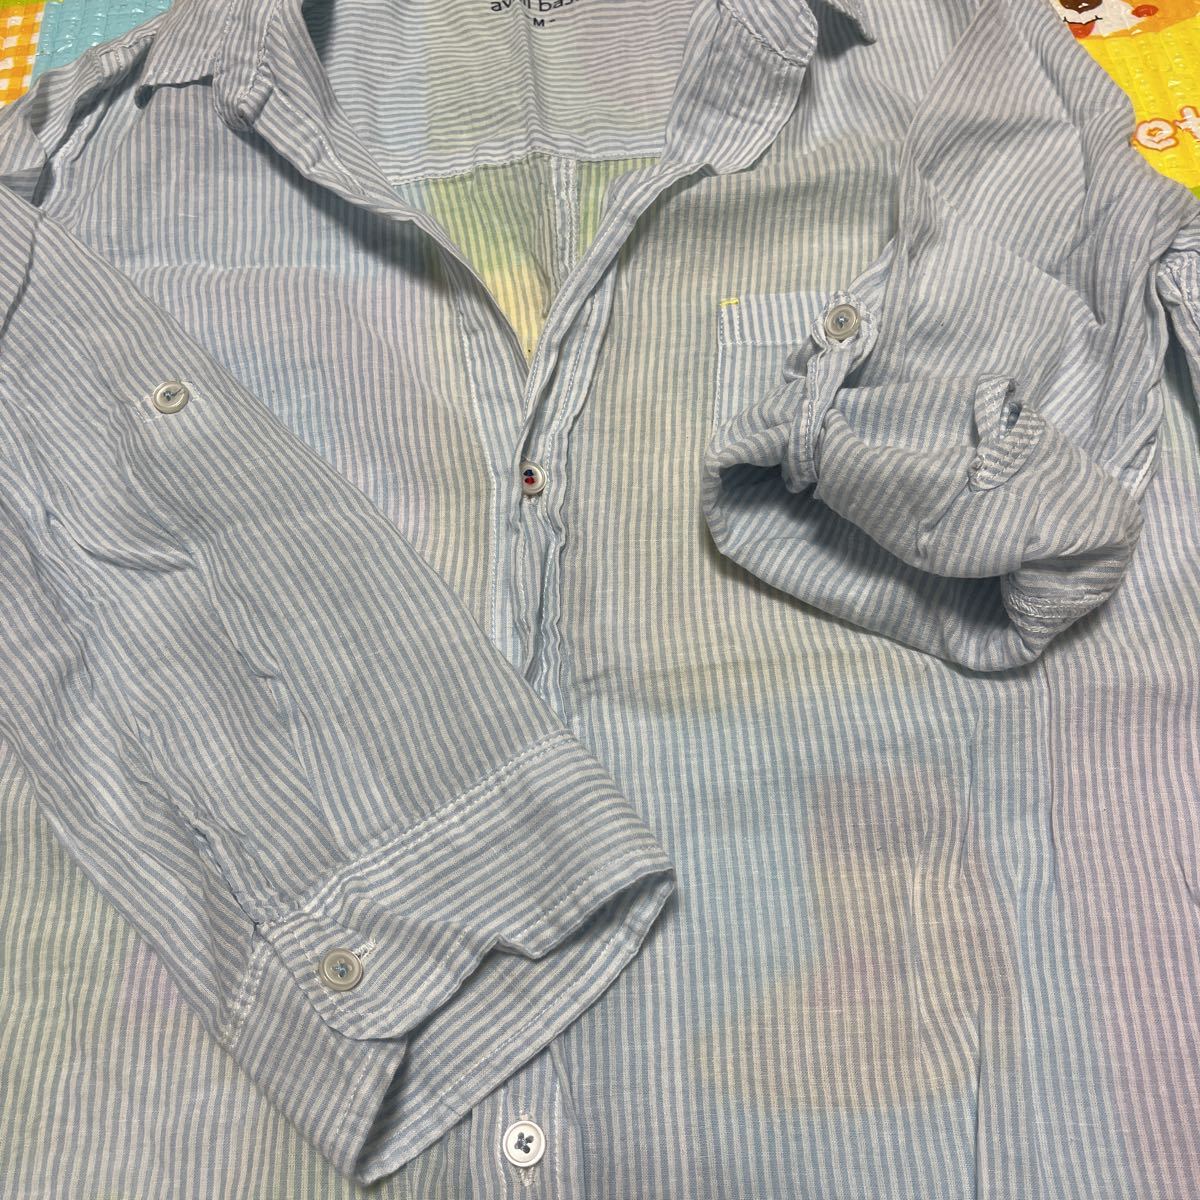 M★*゜Availアベイル シアーシャツ 長袖 7分袖 薄手ストライプ 水色系_画像6